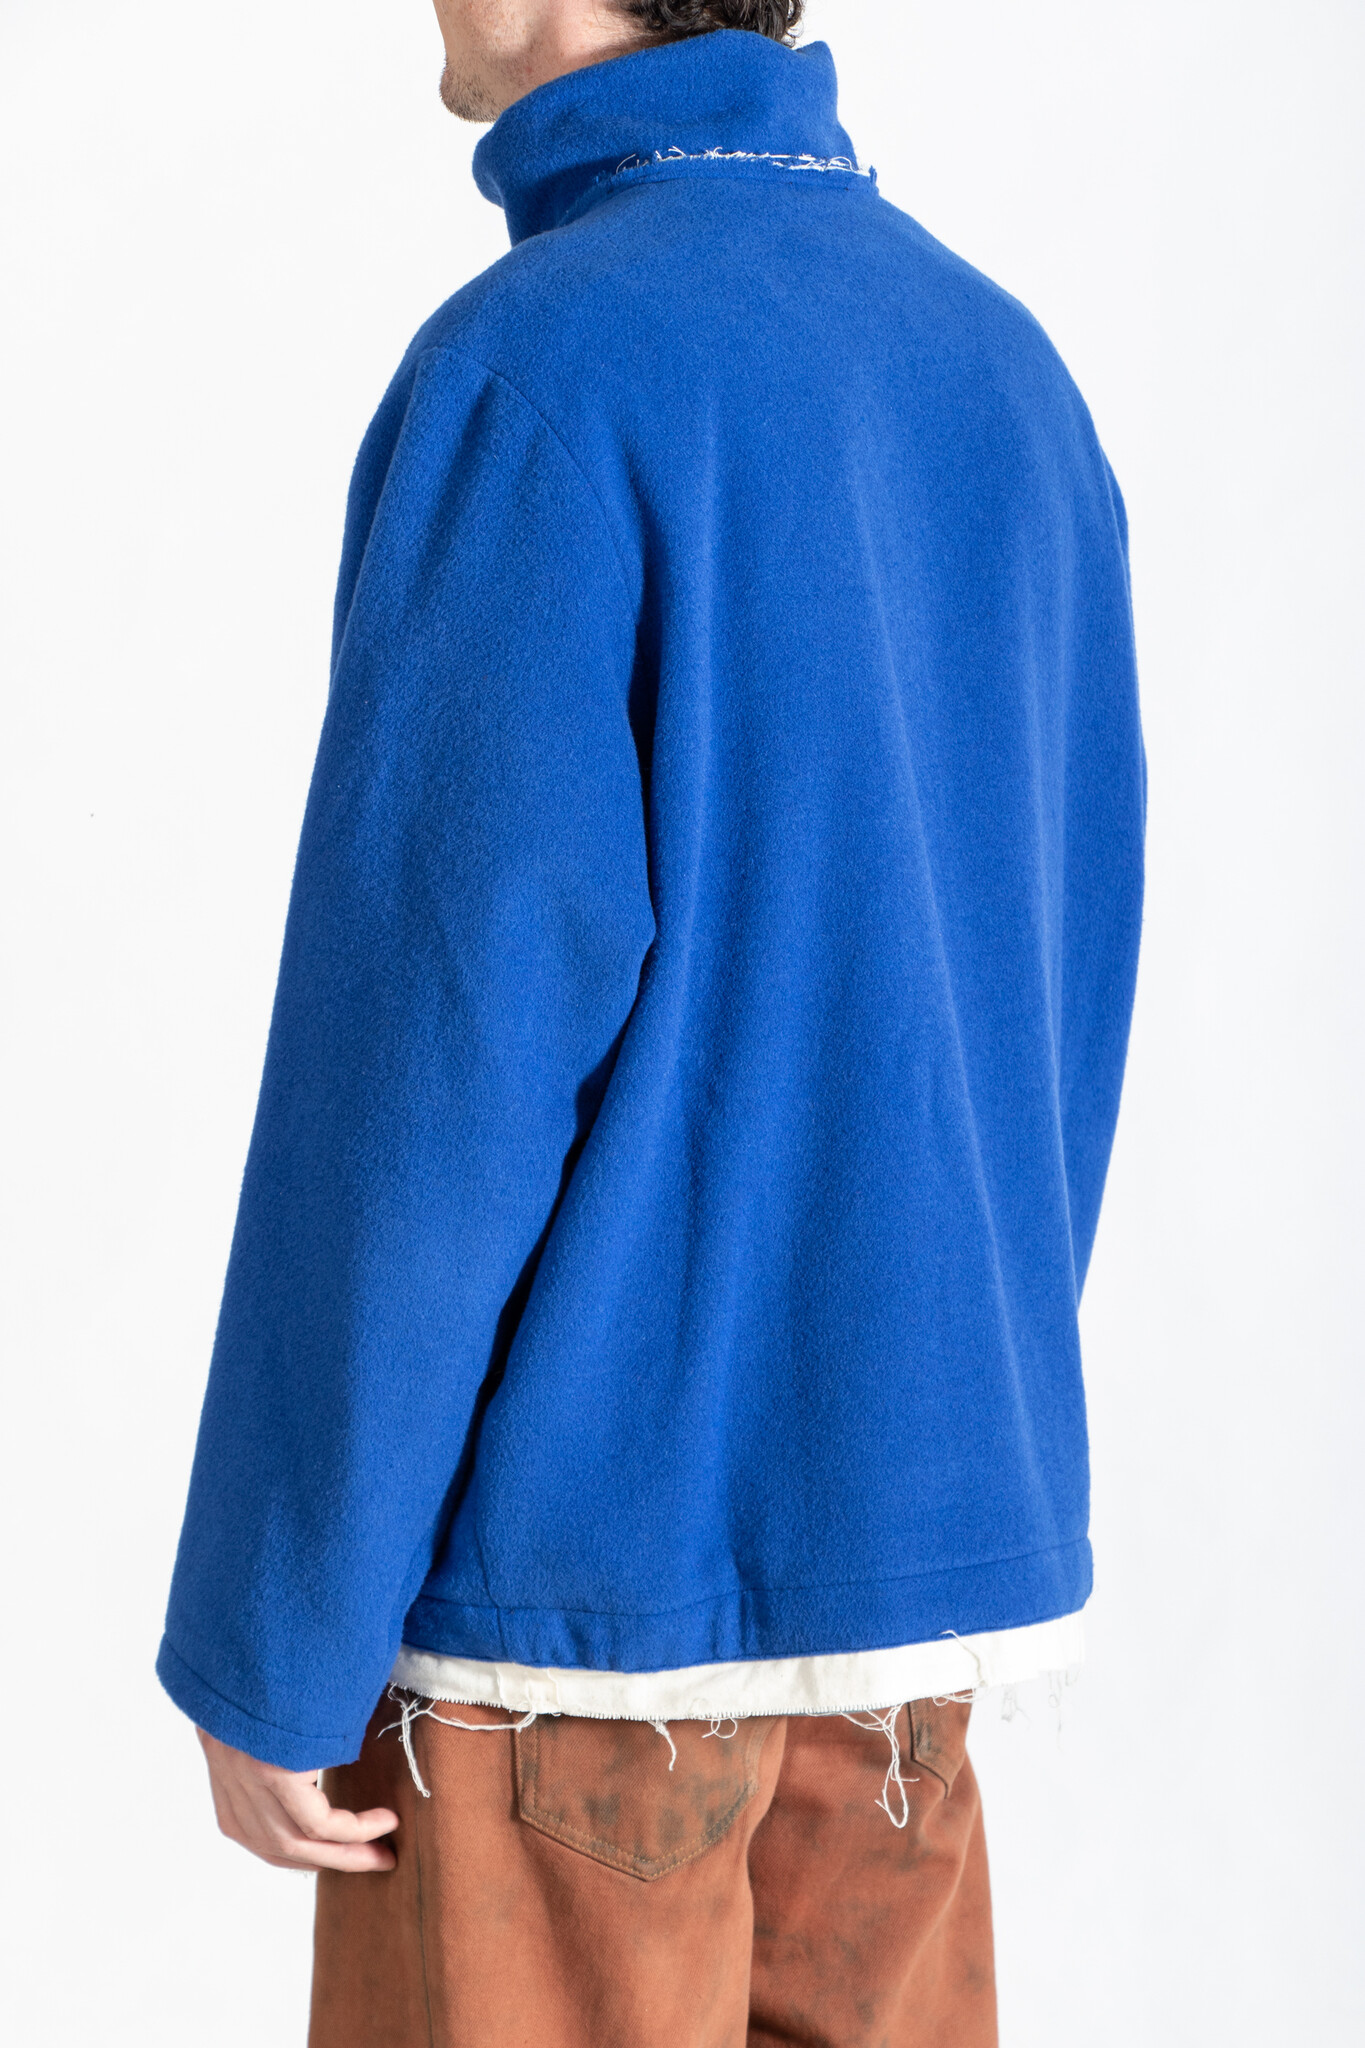 Camiel Fortgens Sweater / Fleece Anorak / Cobalt - c r i s